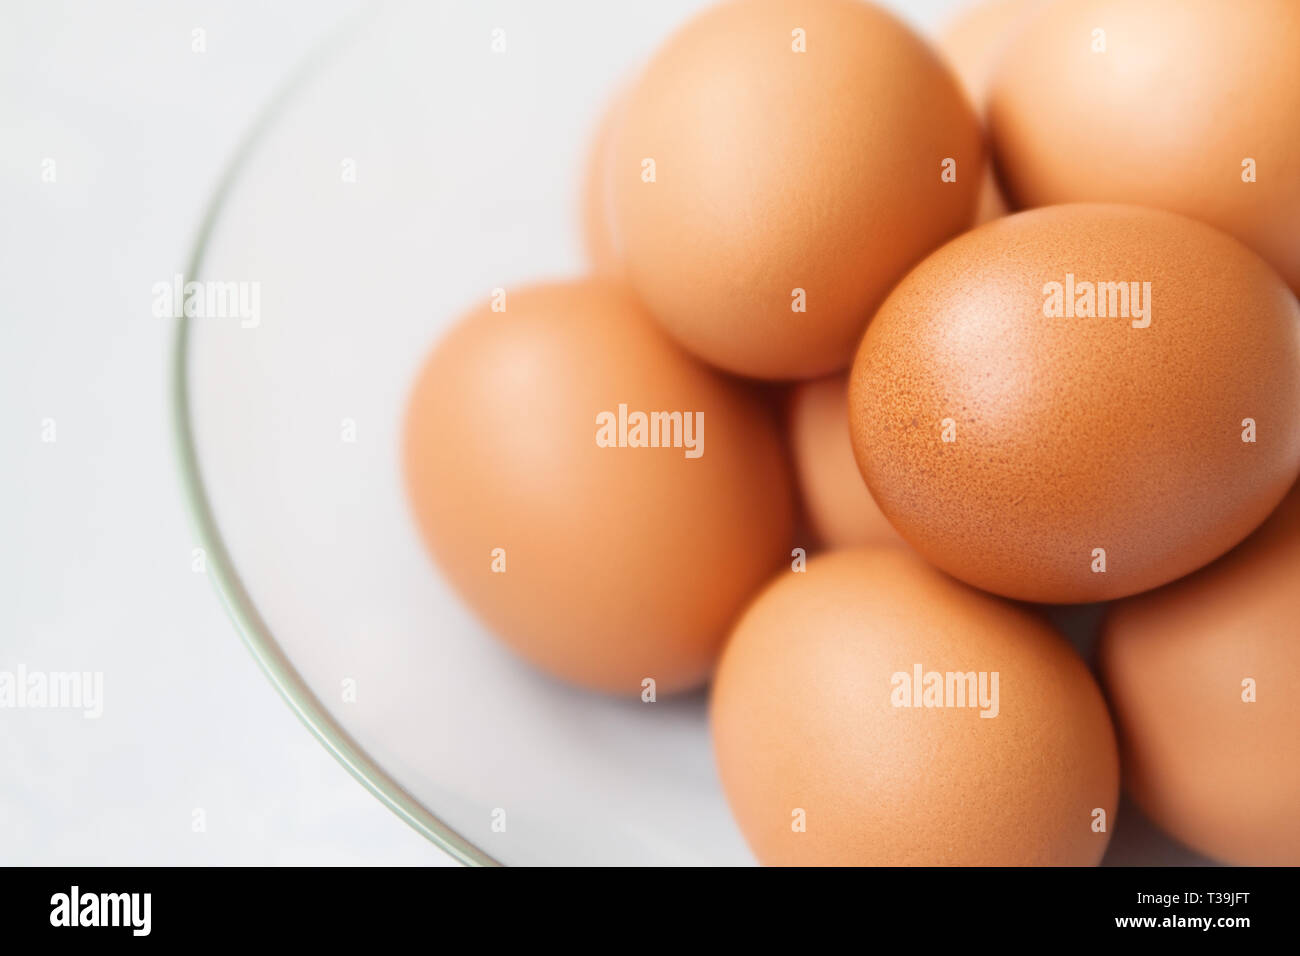 Los huevos de gallina marrón fresco en la placa de vidrio cerrar Foto de stock